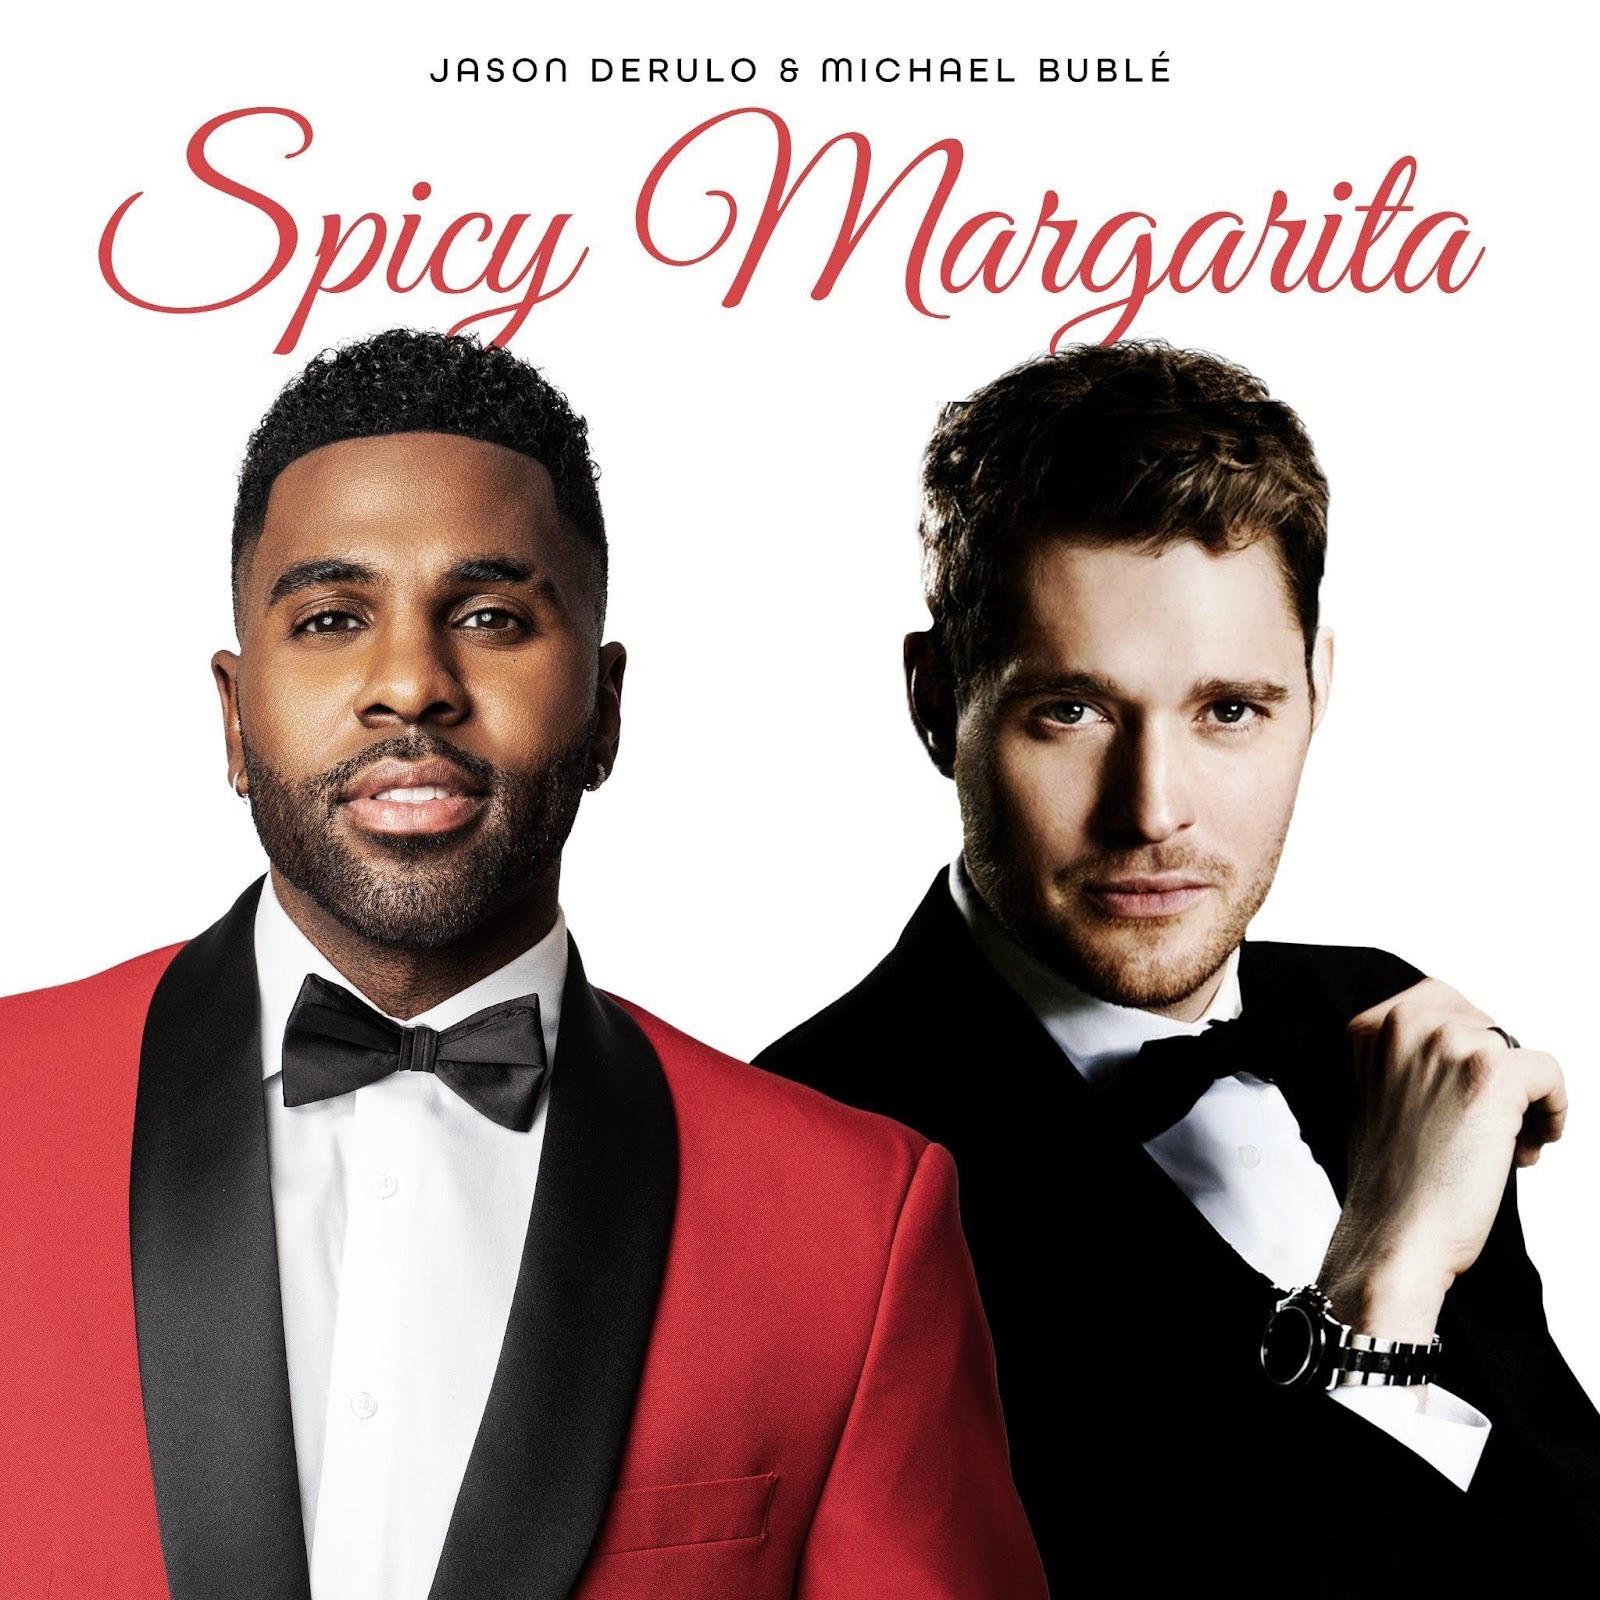 Jason Derulo e Michael Bublé Lançam Colaboração Inédita “Spicy Margarita” e Anunciam Novo Álbum